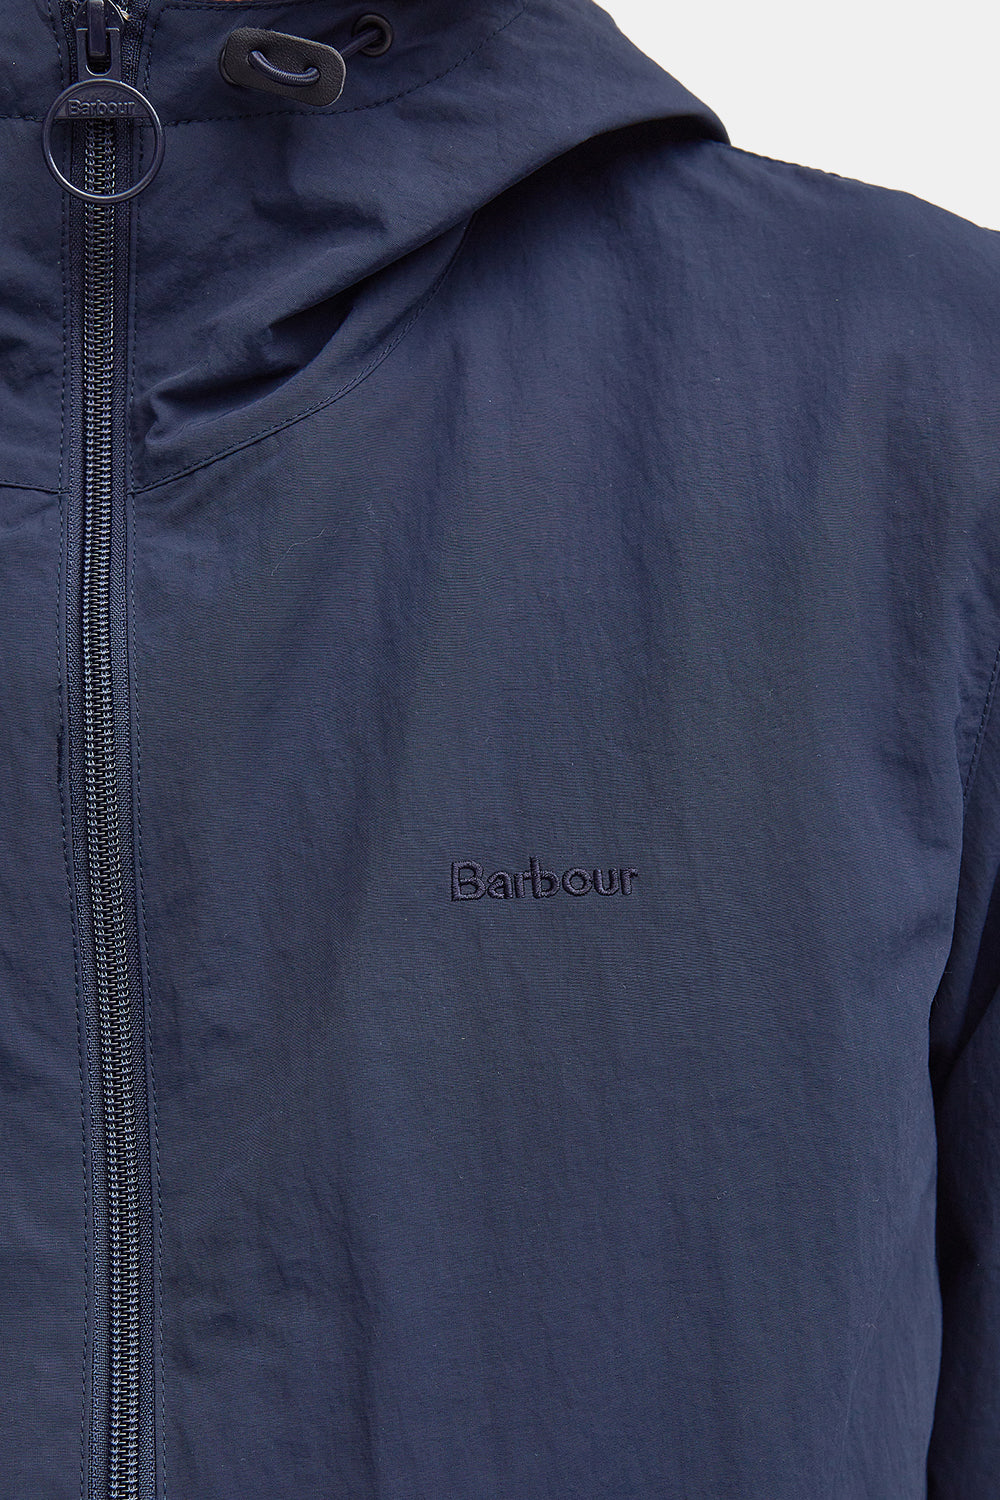 Barbour Berwick Showerproof Jacket (Navy)